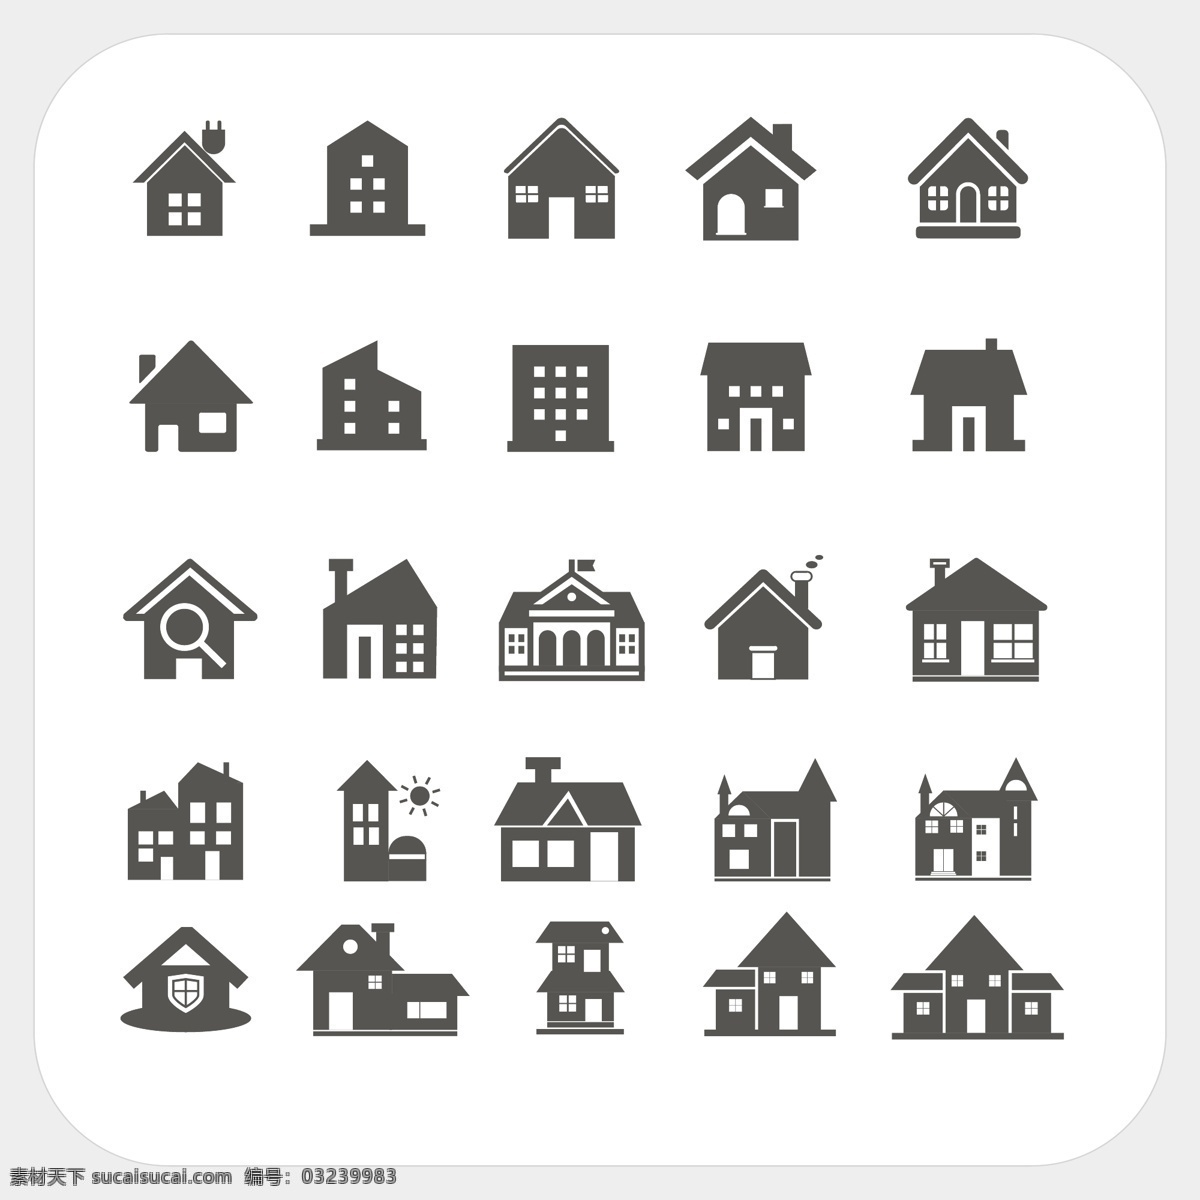 房屋图标 房屋 图形 标志 矢量 房屋图形 小图标